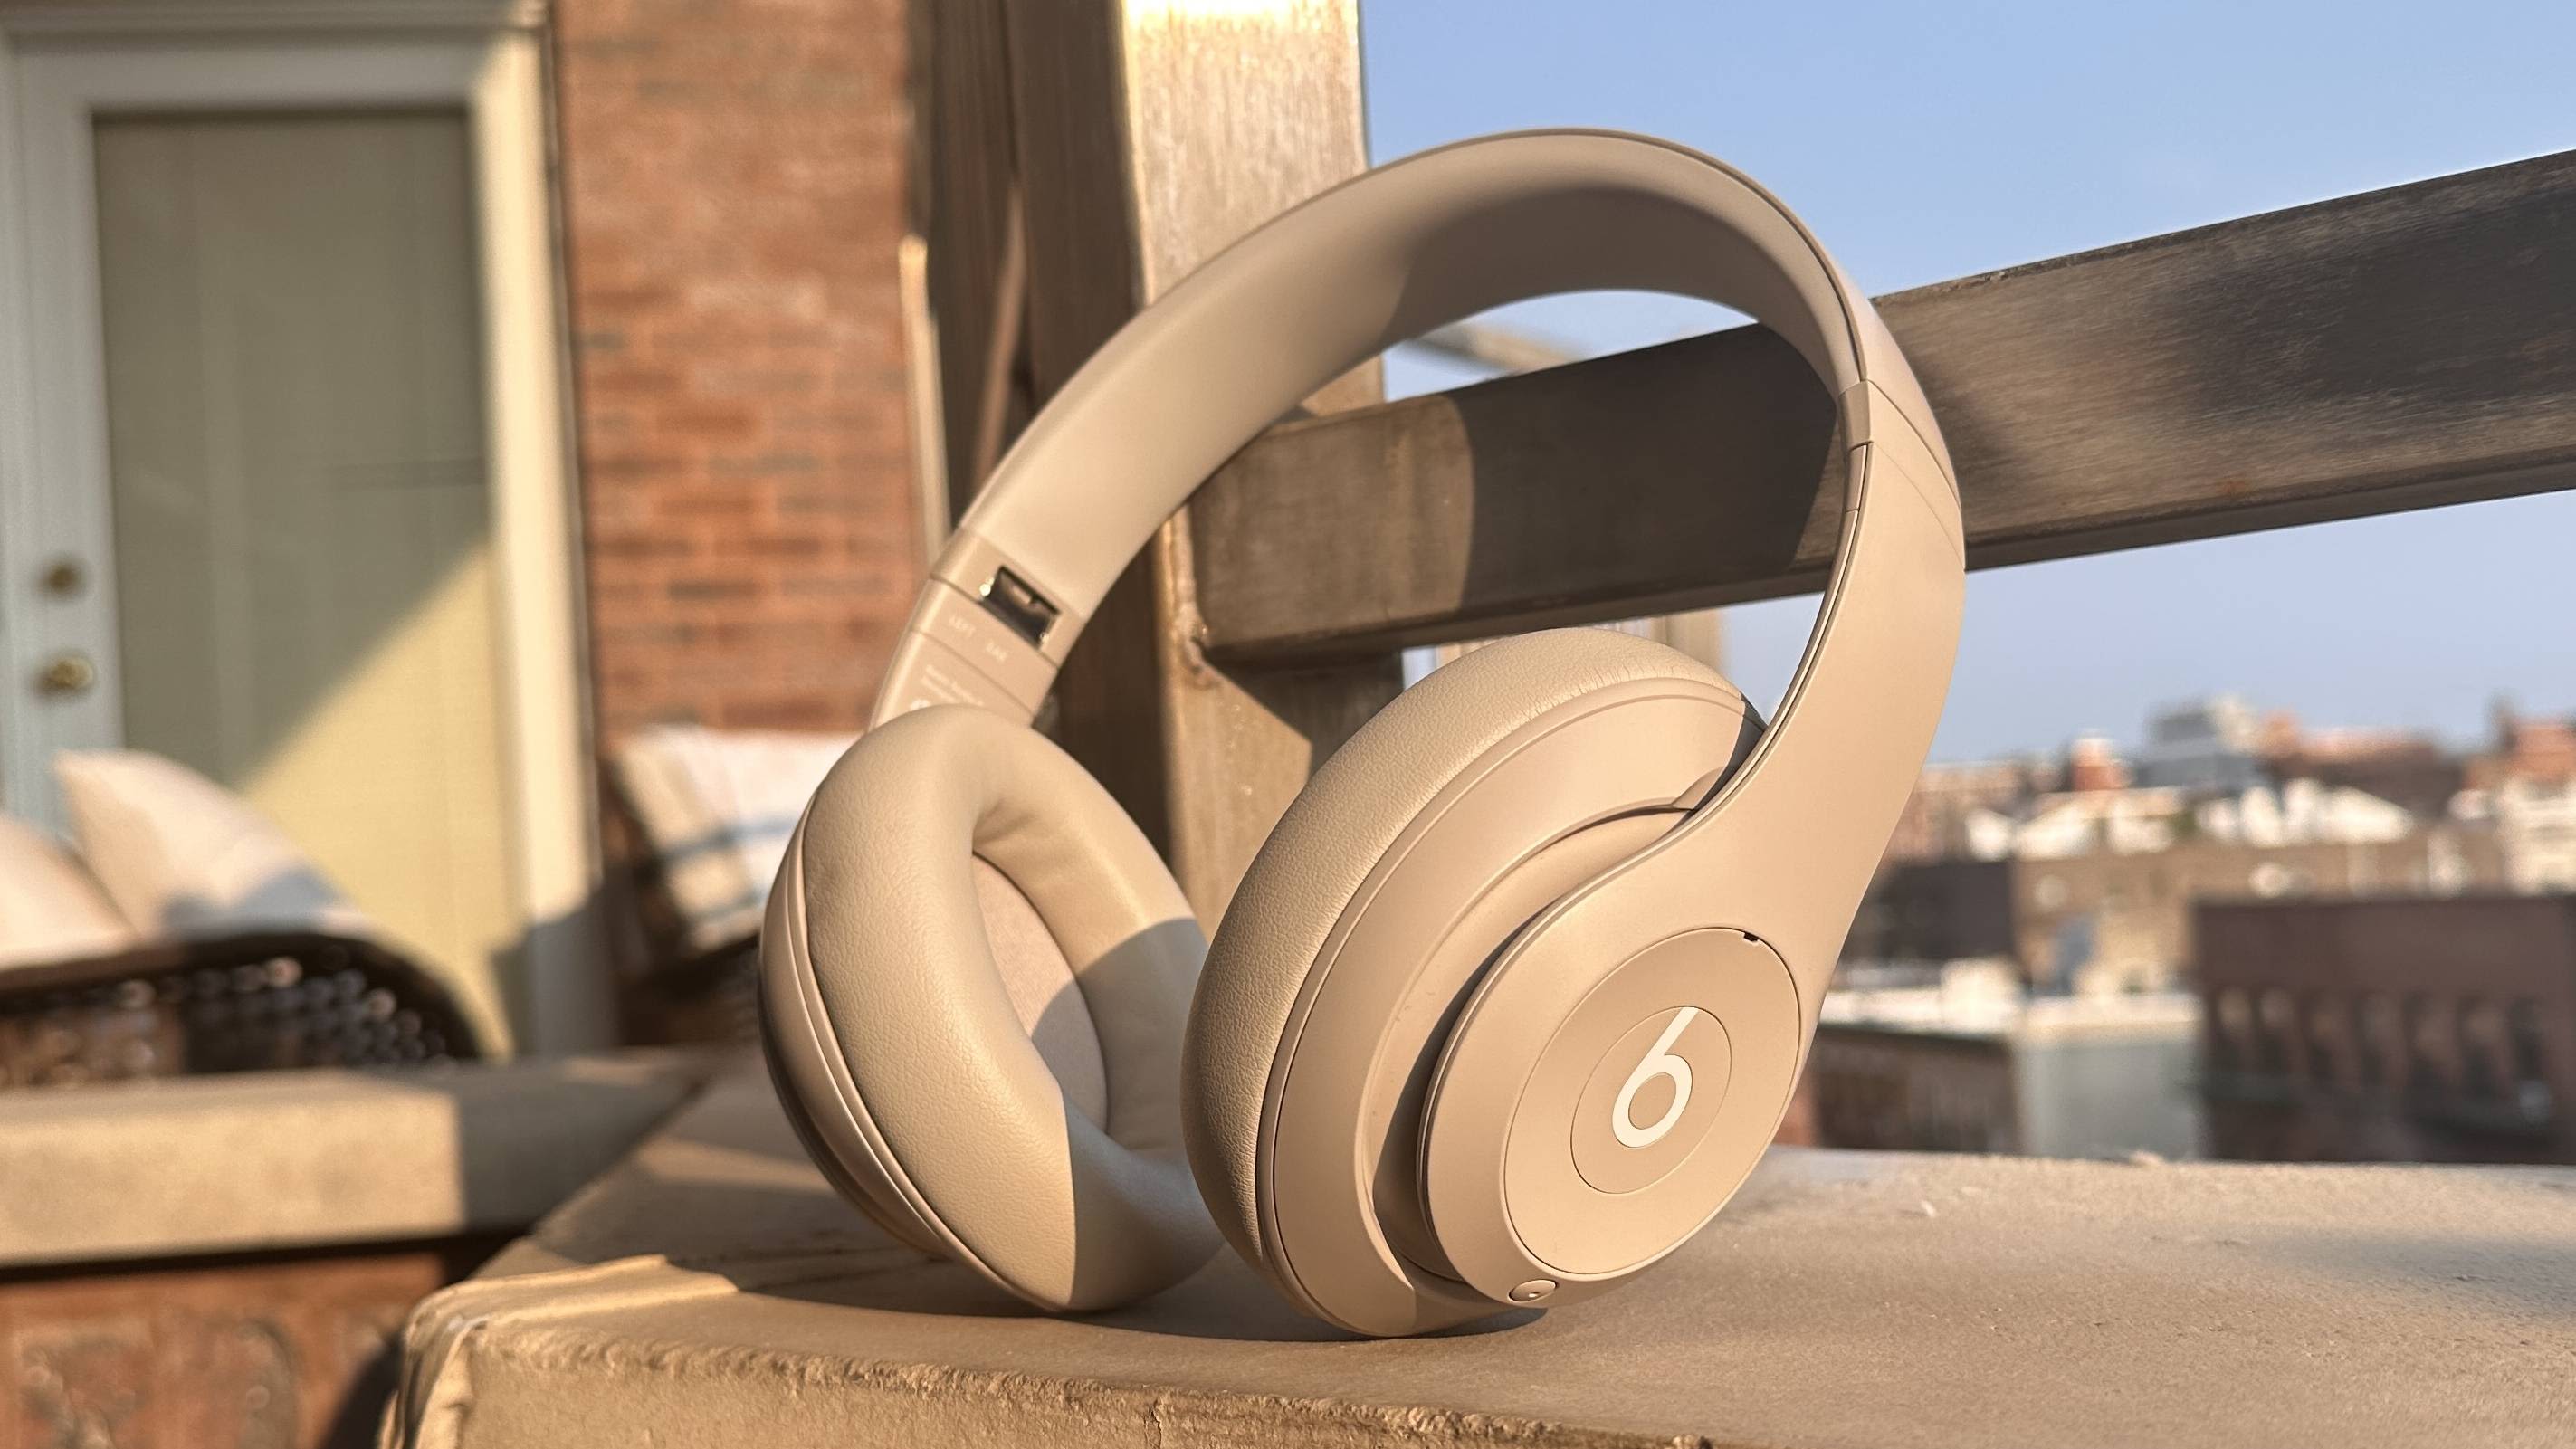 Beats Studio Pro Wireless Headphones - Sandstone